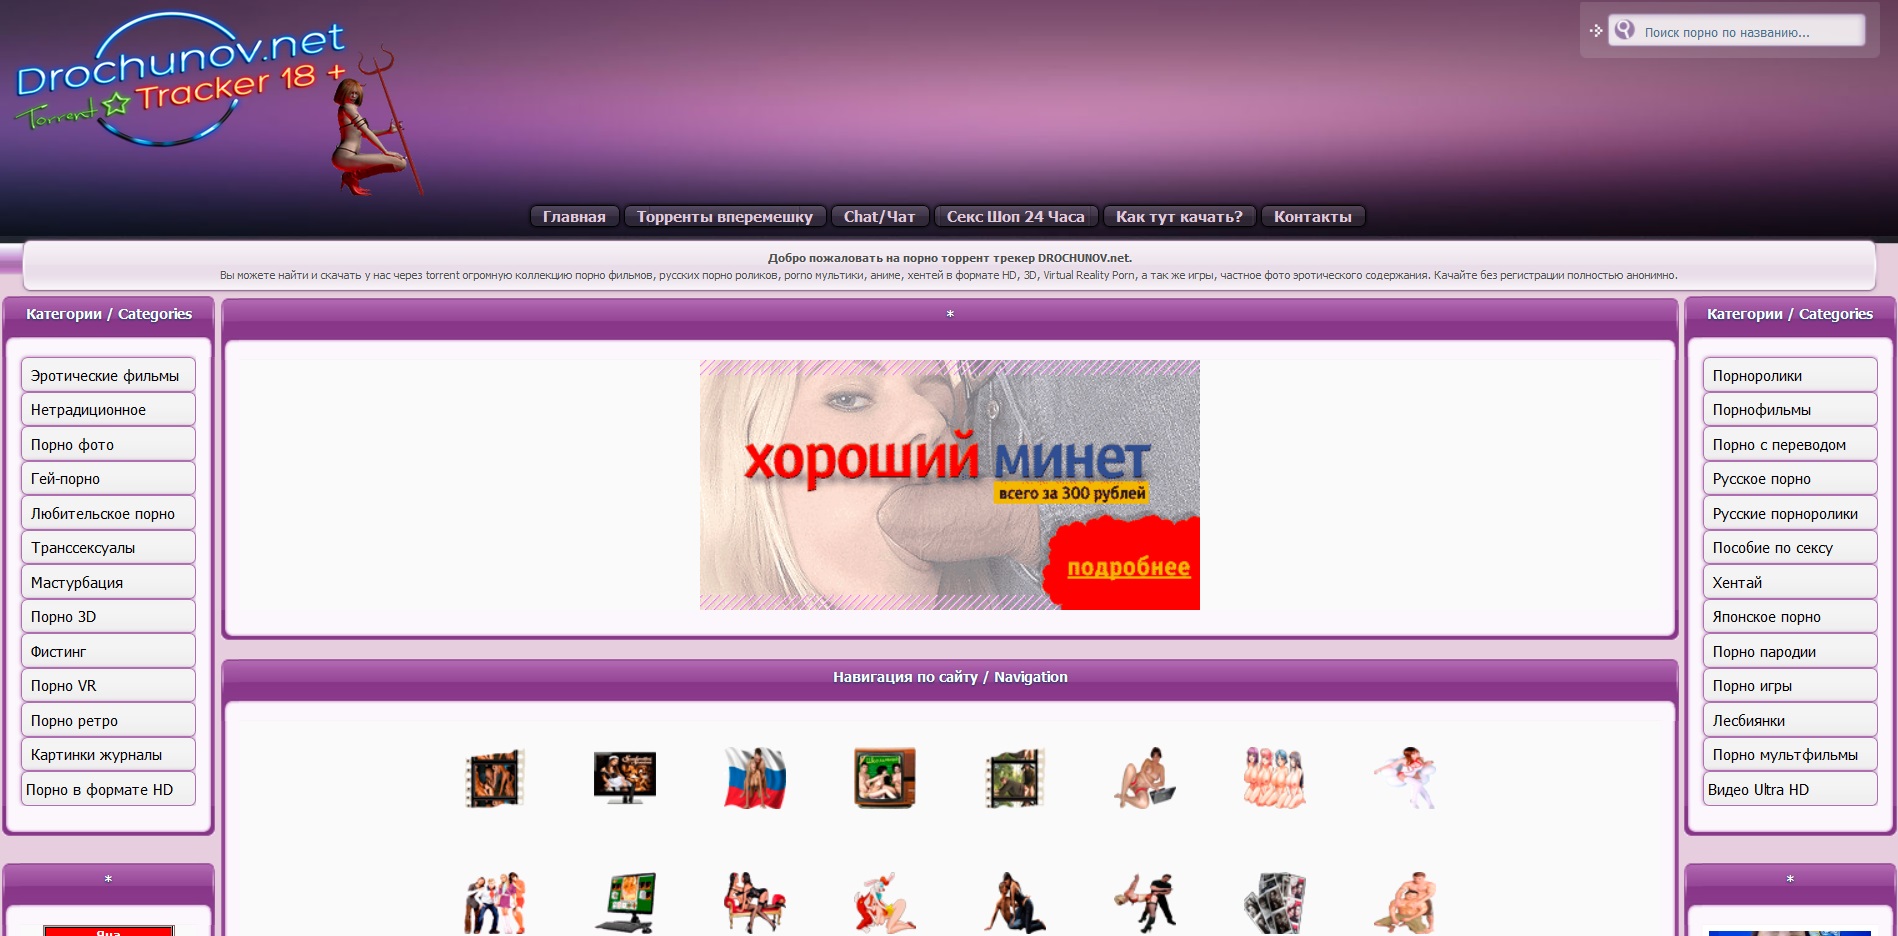 drochunov.net